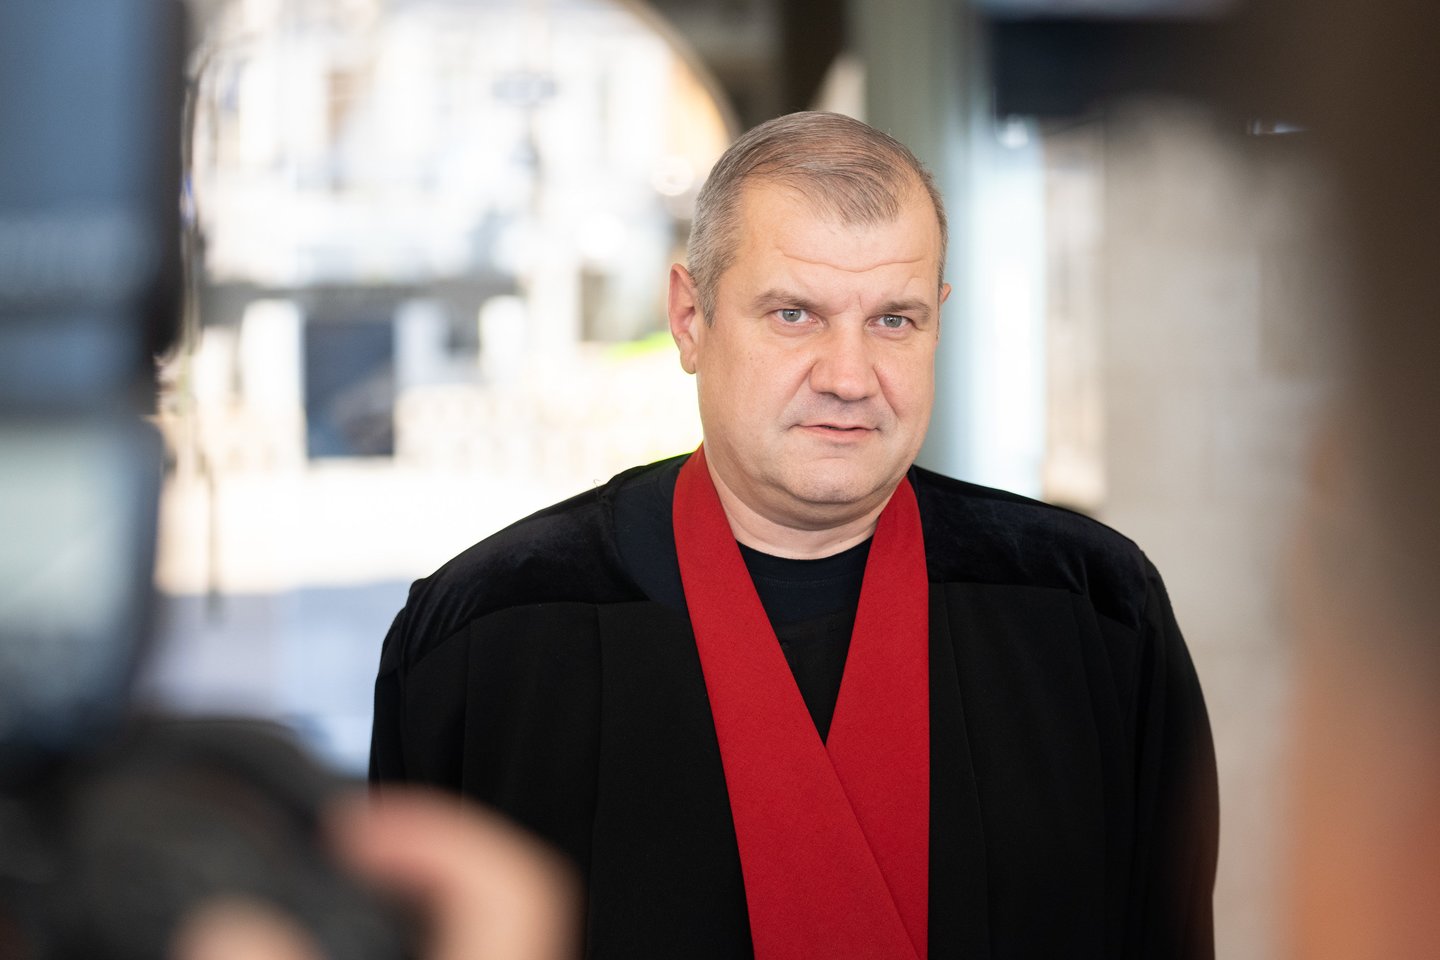  Kauno apylinkės teismas penktadienį paskelbė nuosprendį jau antroje byloje mentoriui R. Jakščiui dėl seksualinių nusikaltimų prieš vaikus. Išklausyti jo kaltinamasis neatvyko (nuotr. prokuroras A. Kiuršinas). <br> G. Bitvinsko nuotr. 